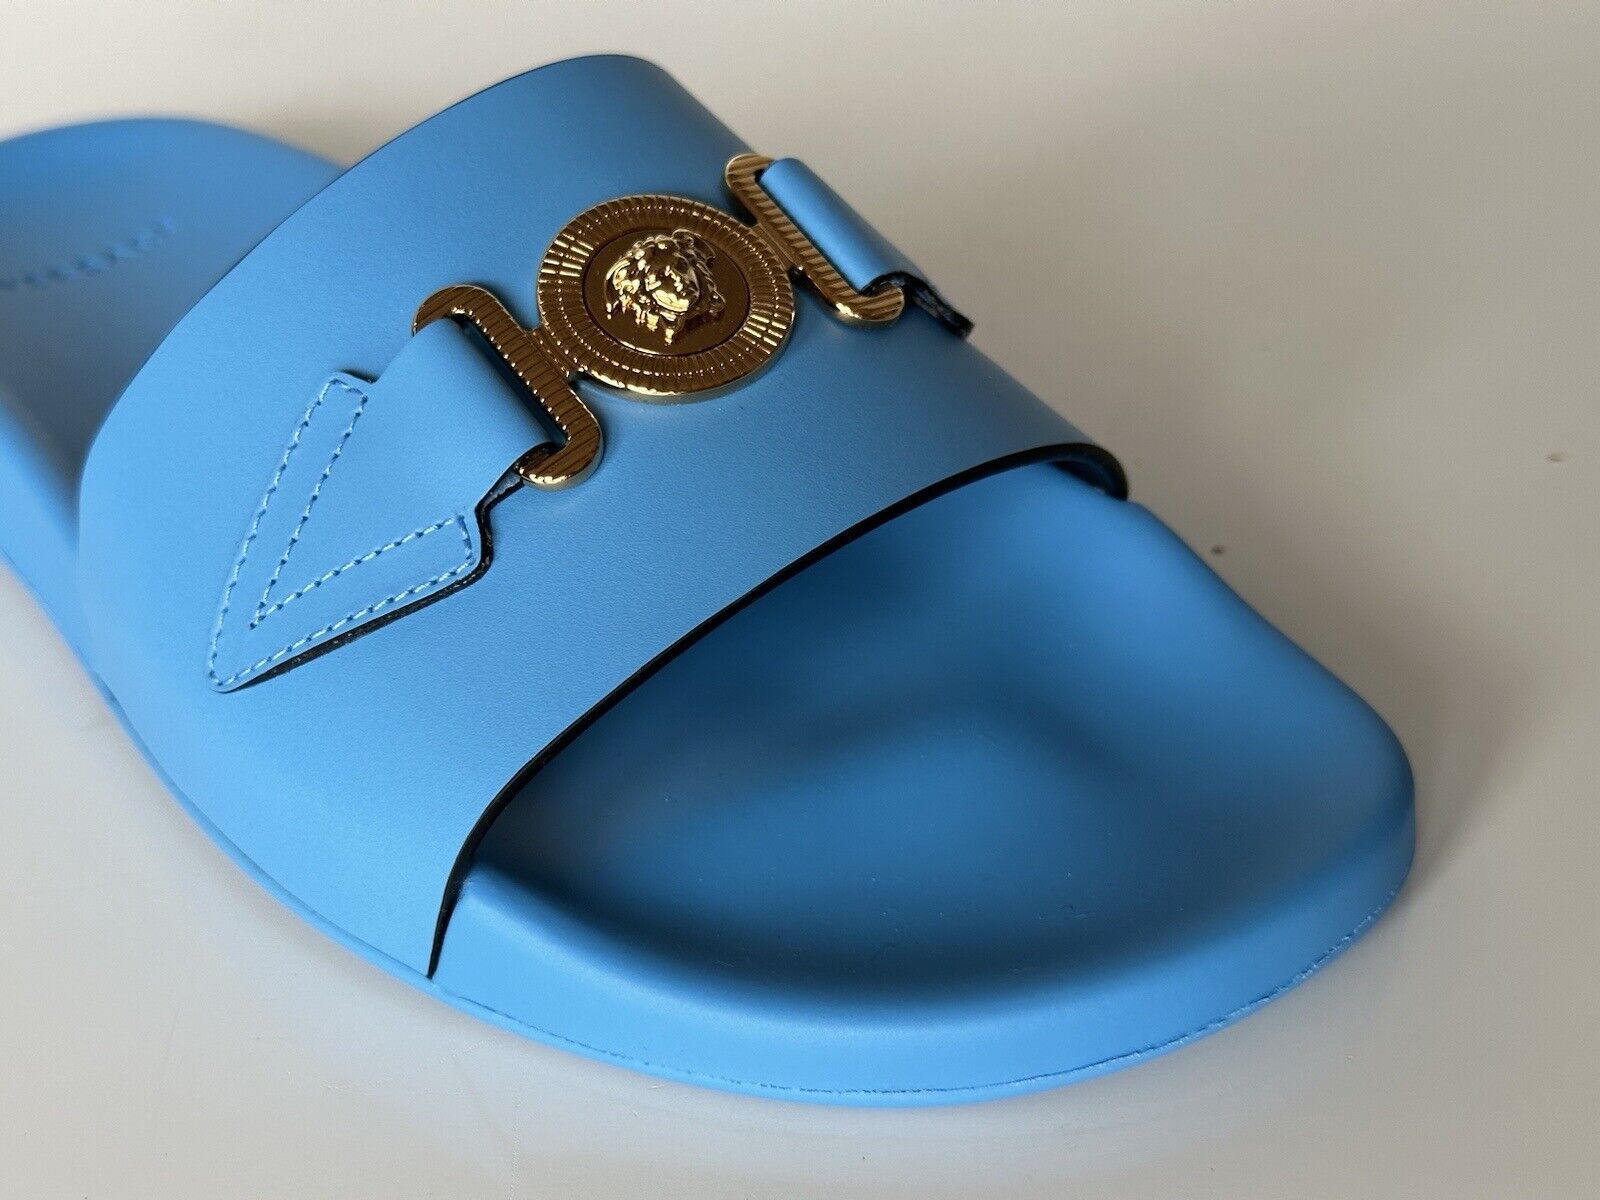 NIB 575 долларов США Versace Gold Medusa Кожаные/резиновые сандалии Синие 12 США (45) 1004983 IT